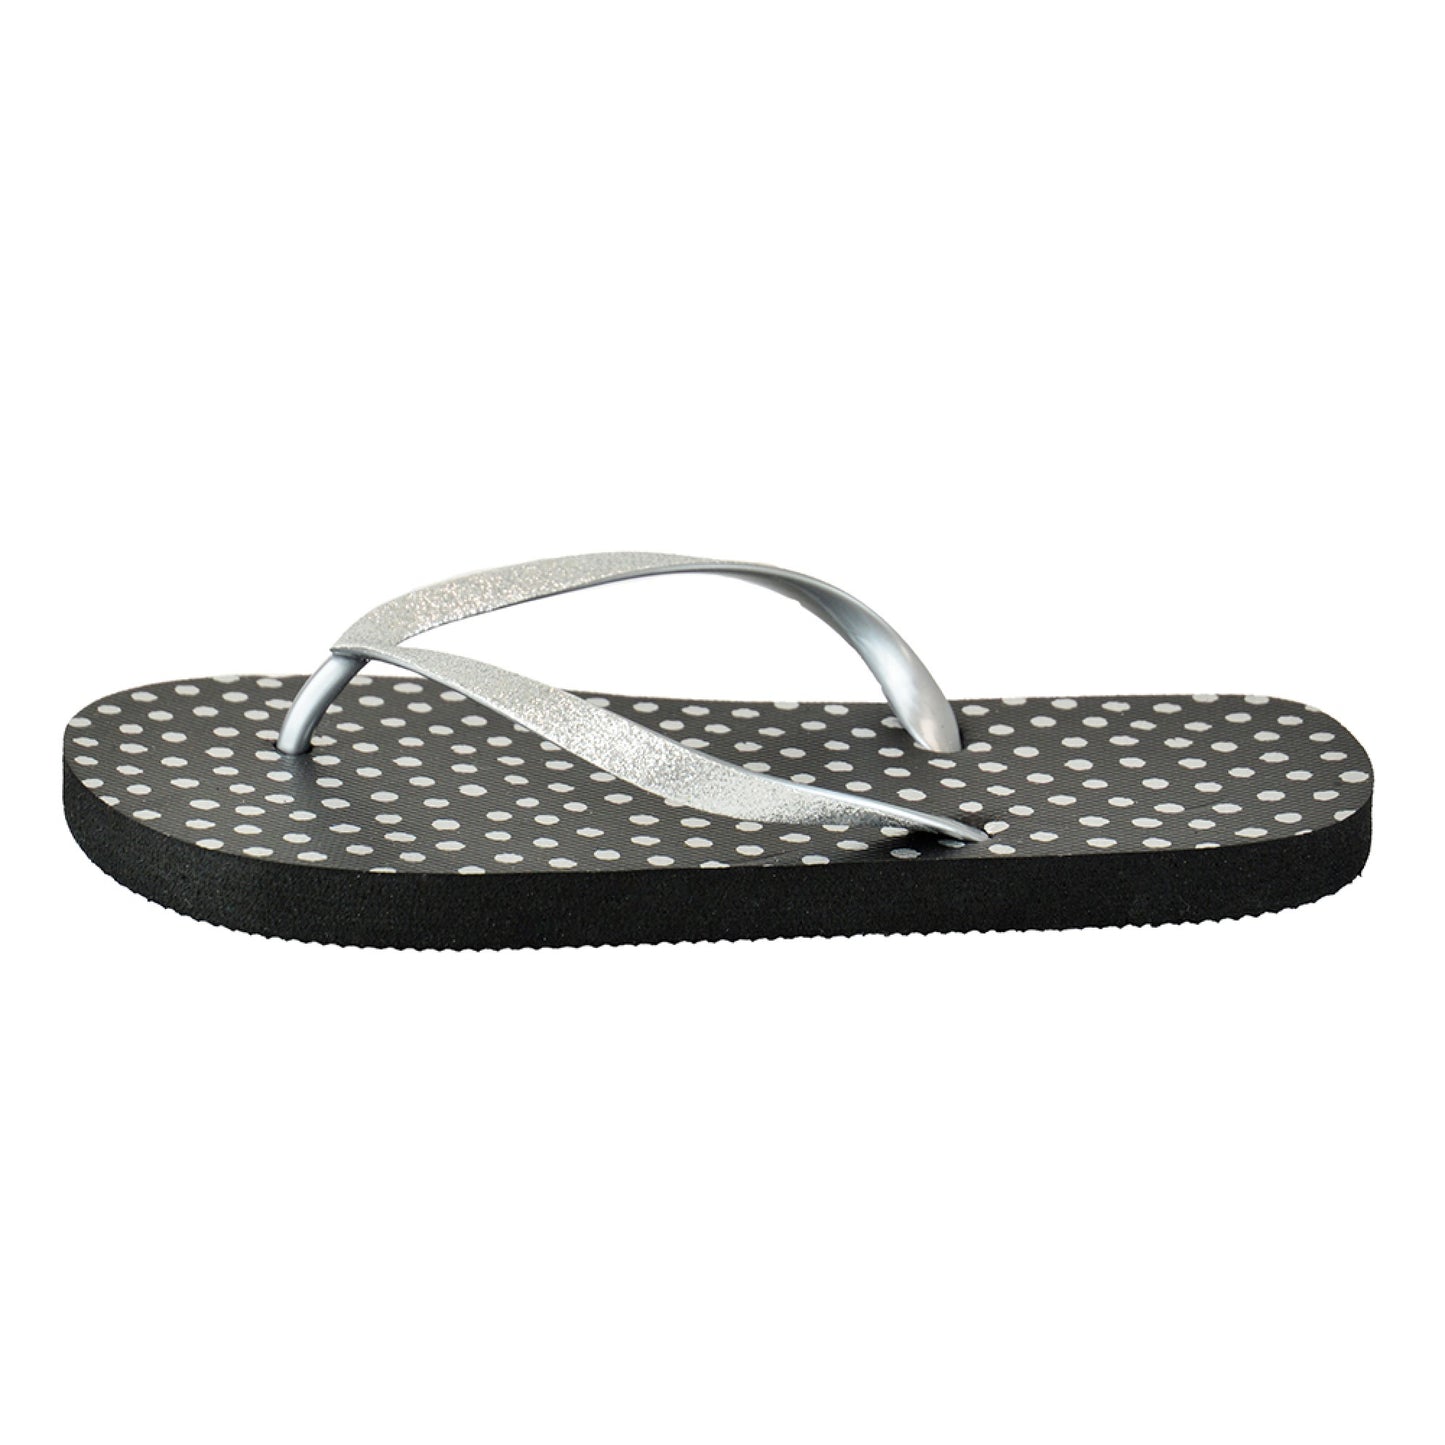 Ladies Glittery Metallic Spot Summer Flip Flops Beach Sandals